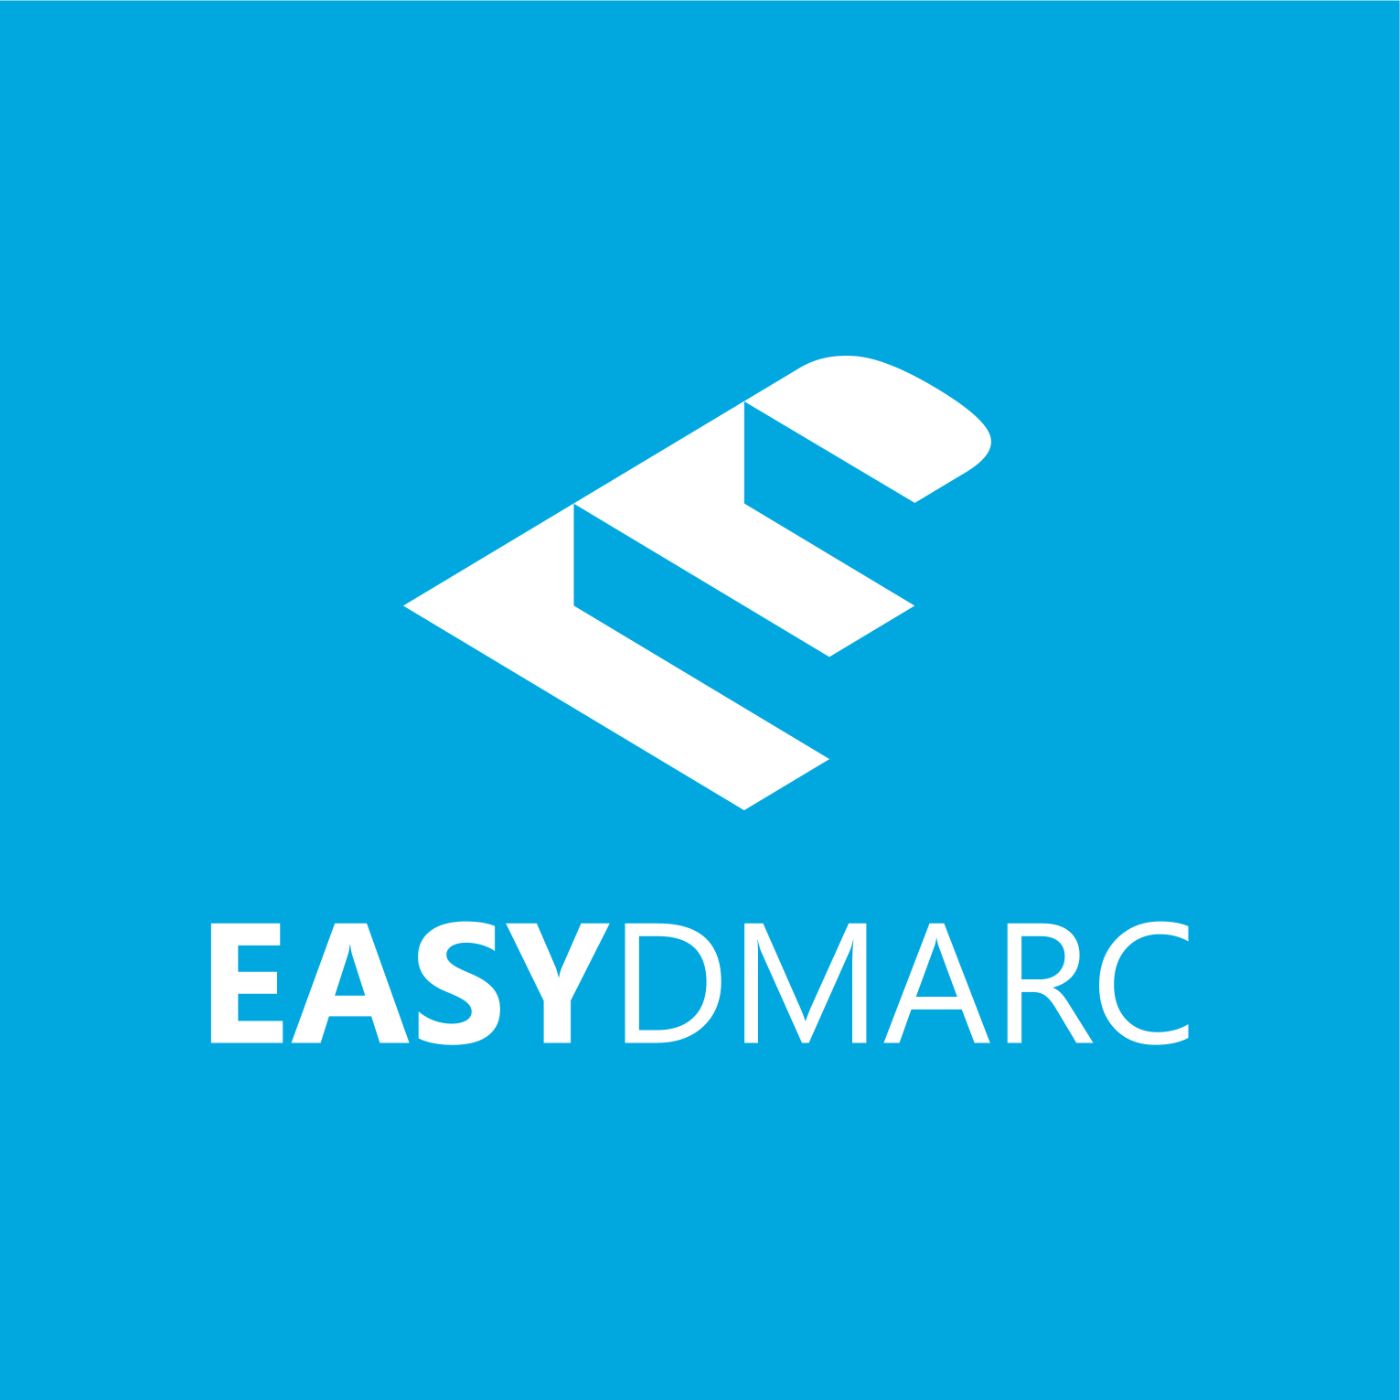 EasyDMARC HackerNoon profile picture